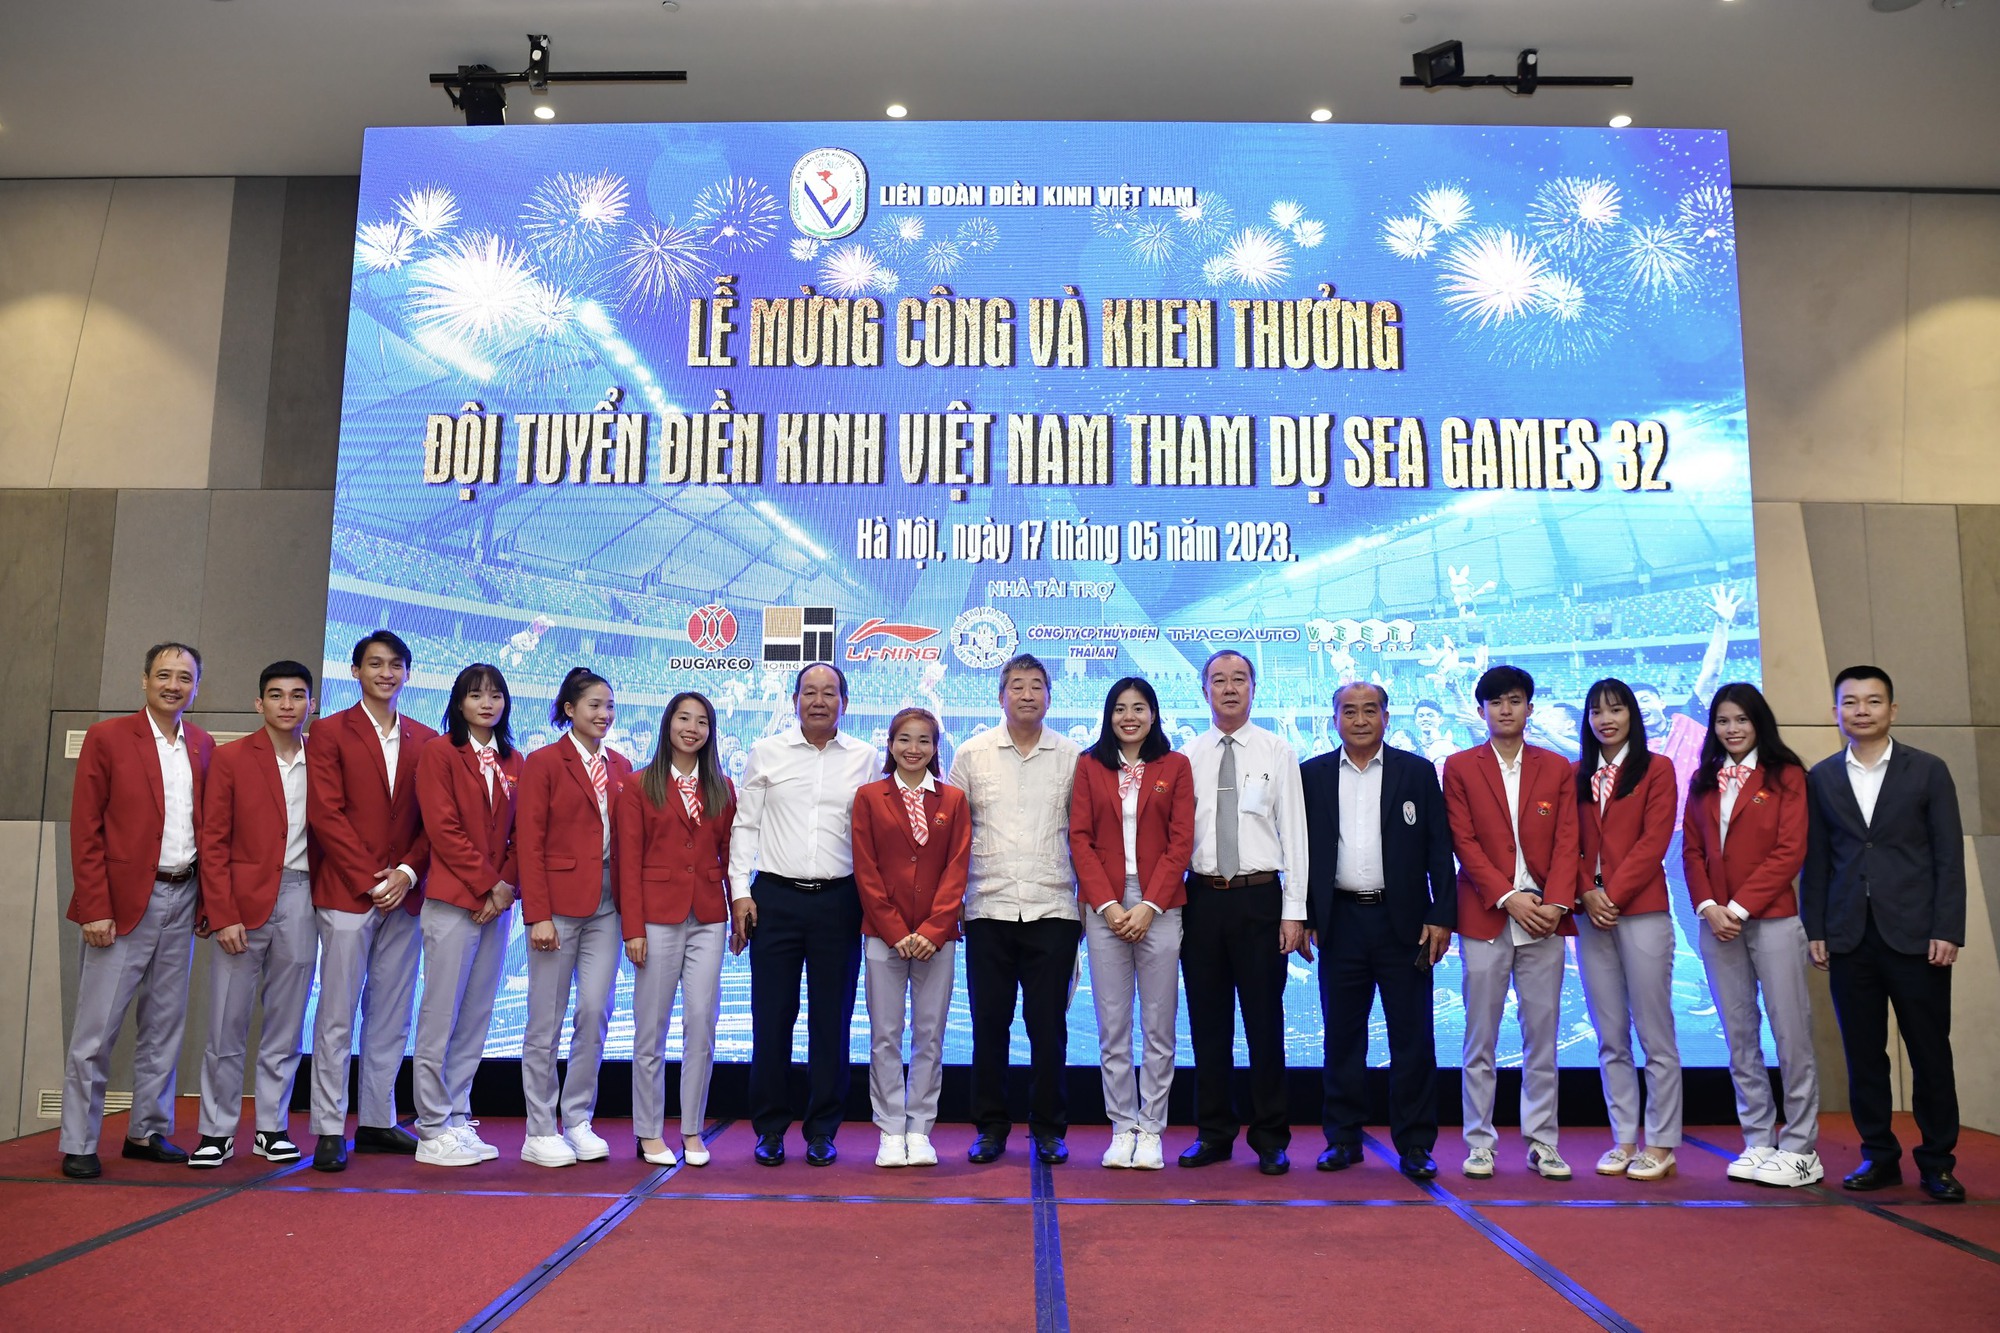 Gần 36 tỉ đồng tiền thưởng cho đoàn Việt Nam tại SEA Games 32, đội nào được nhiều nhất? - Ảnh 6.